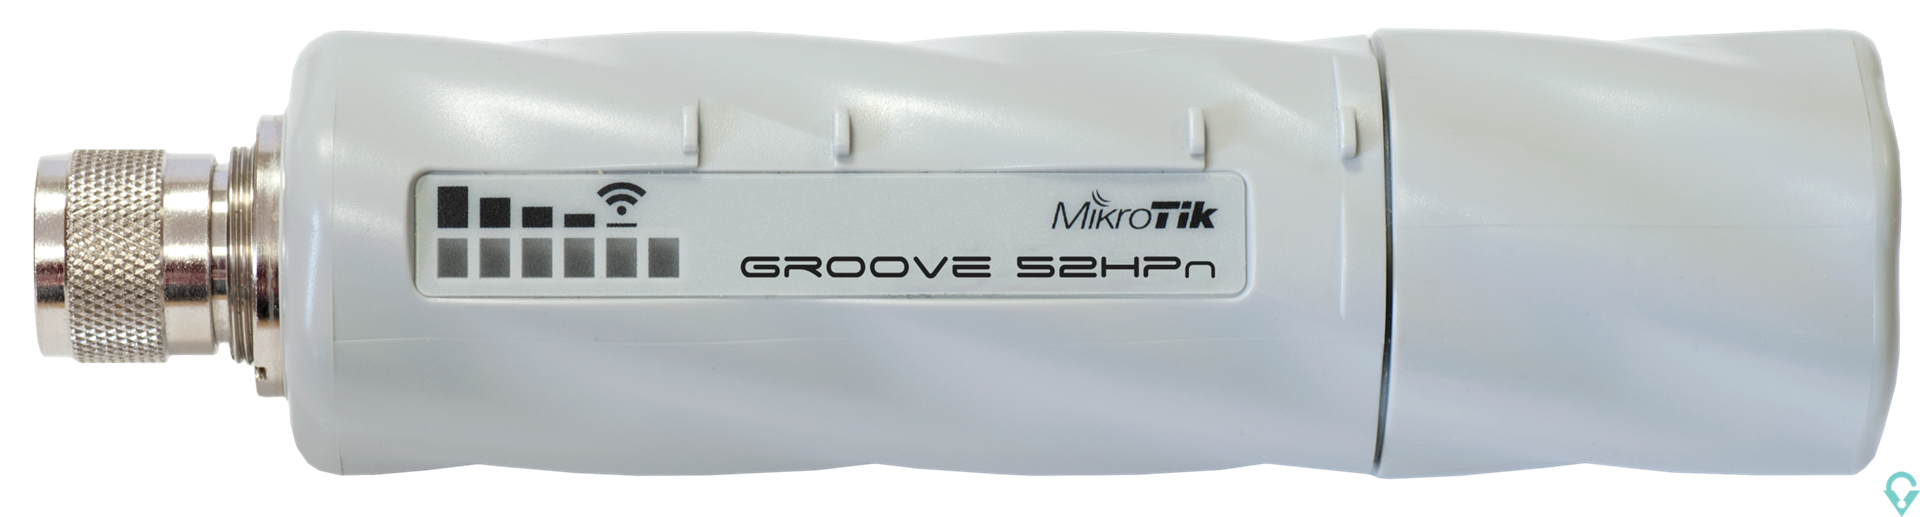 Εικόνα της RBGrooveA-52HPn GrooveA 52 with N-male connector, High Gain Single Chain 2.4GHz / 5GHz 802.11abgn wireless, 600MHz CPU, 64MB RAM